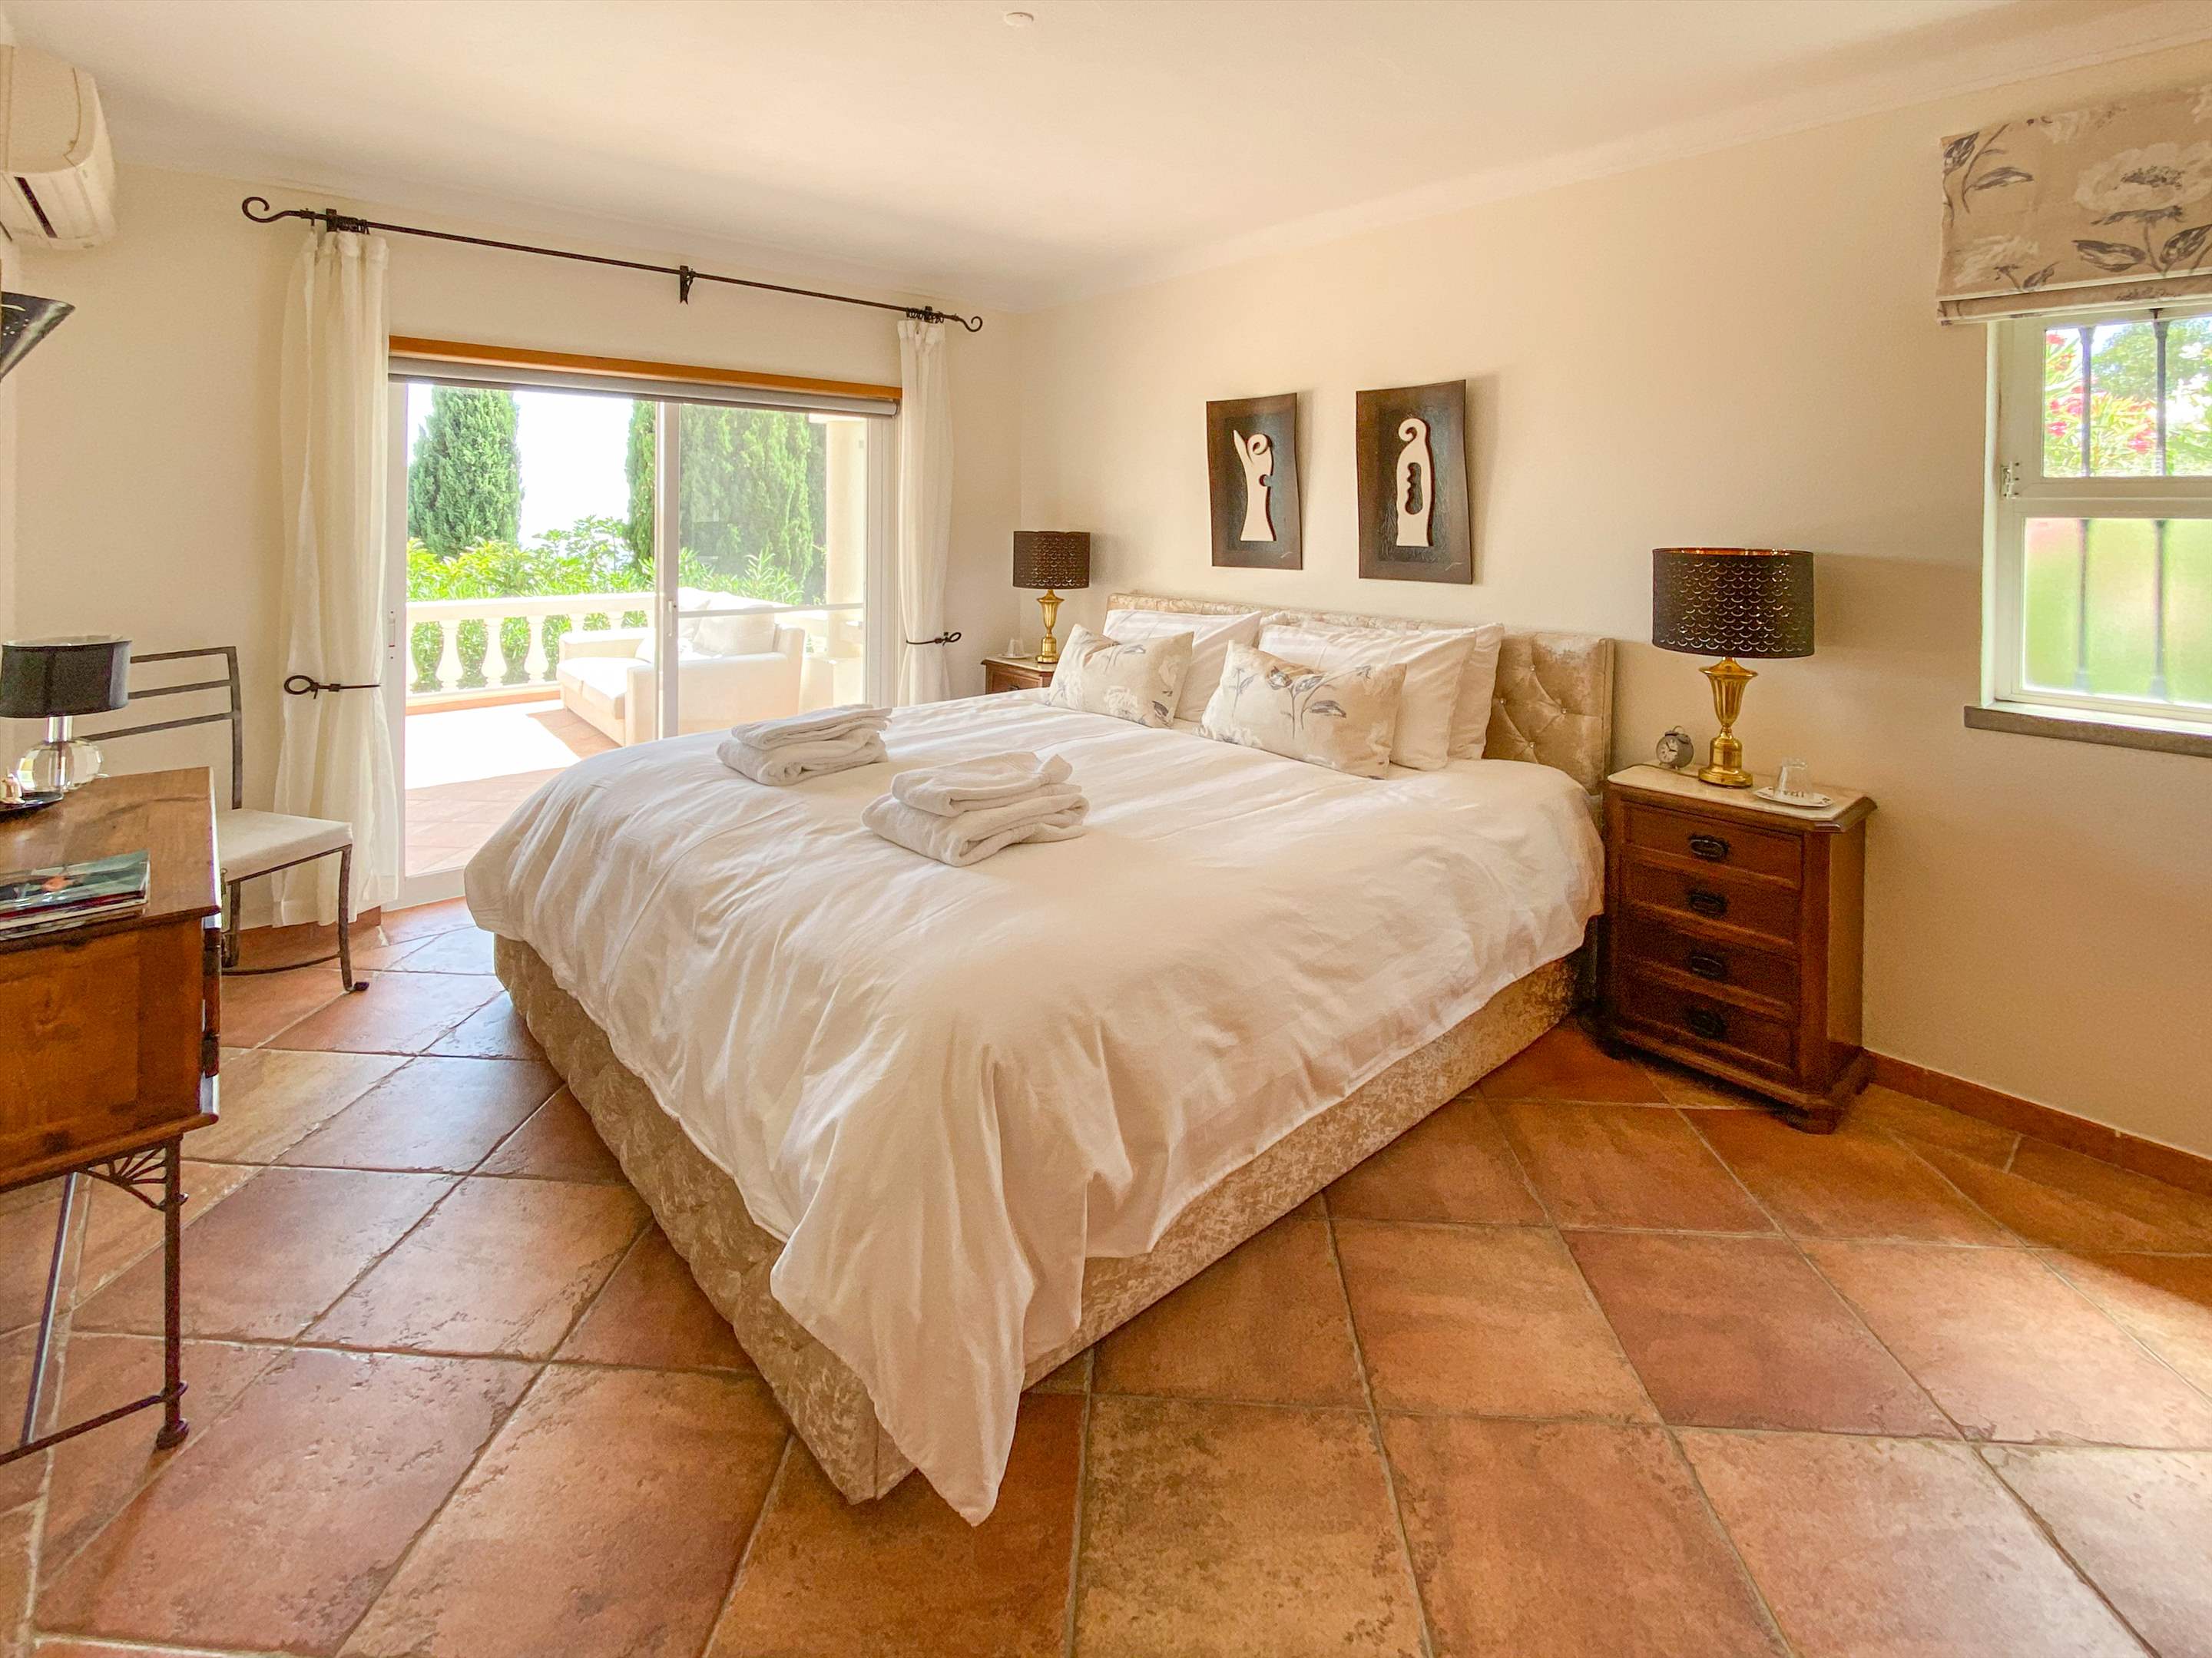 Villa Netuno, 11 persons rate, 1 extra person on sofa bed, 5 bedroom villa in Algarve Countryside, Algarve Photo #29